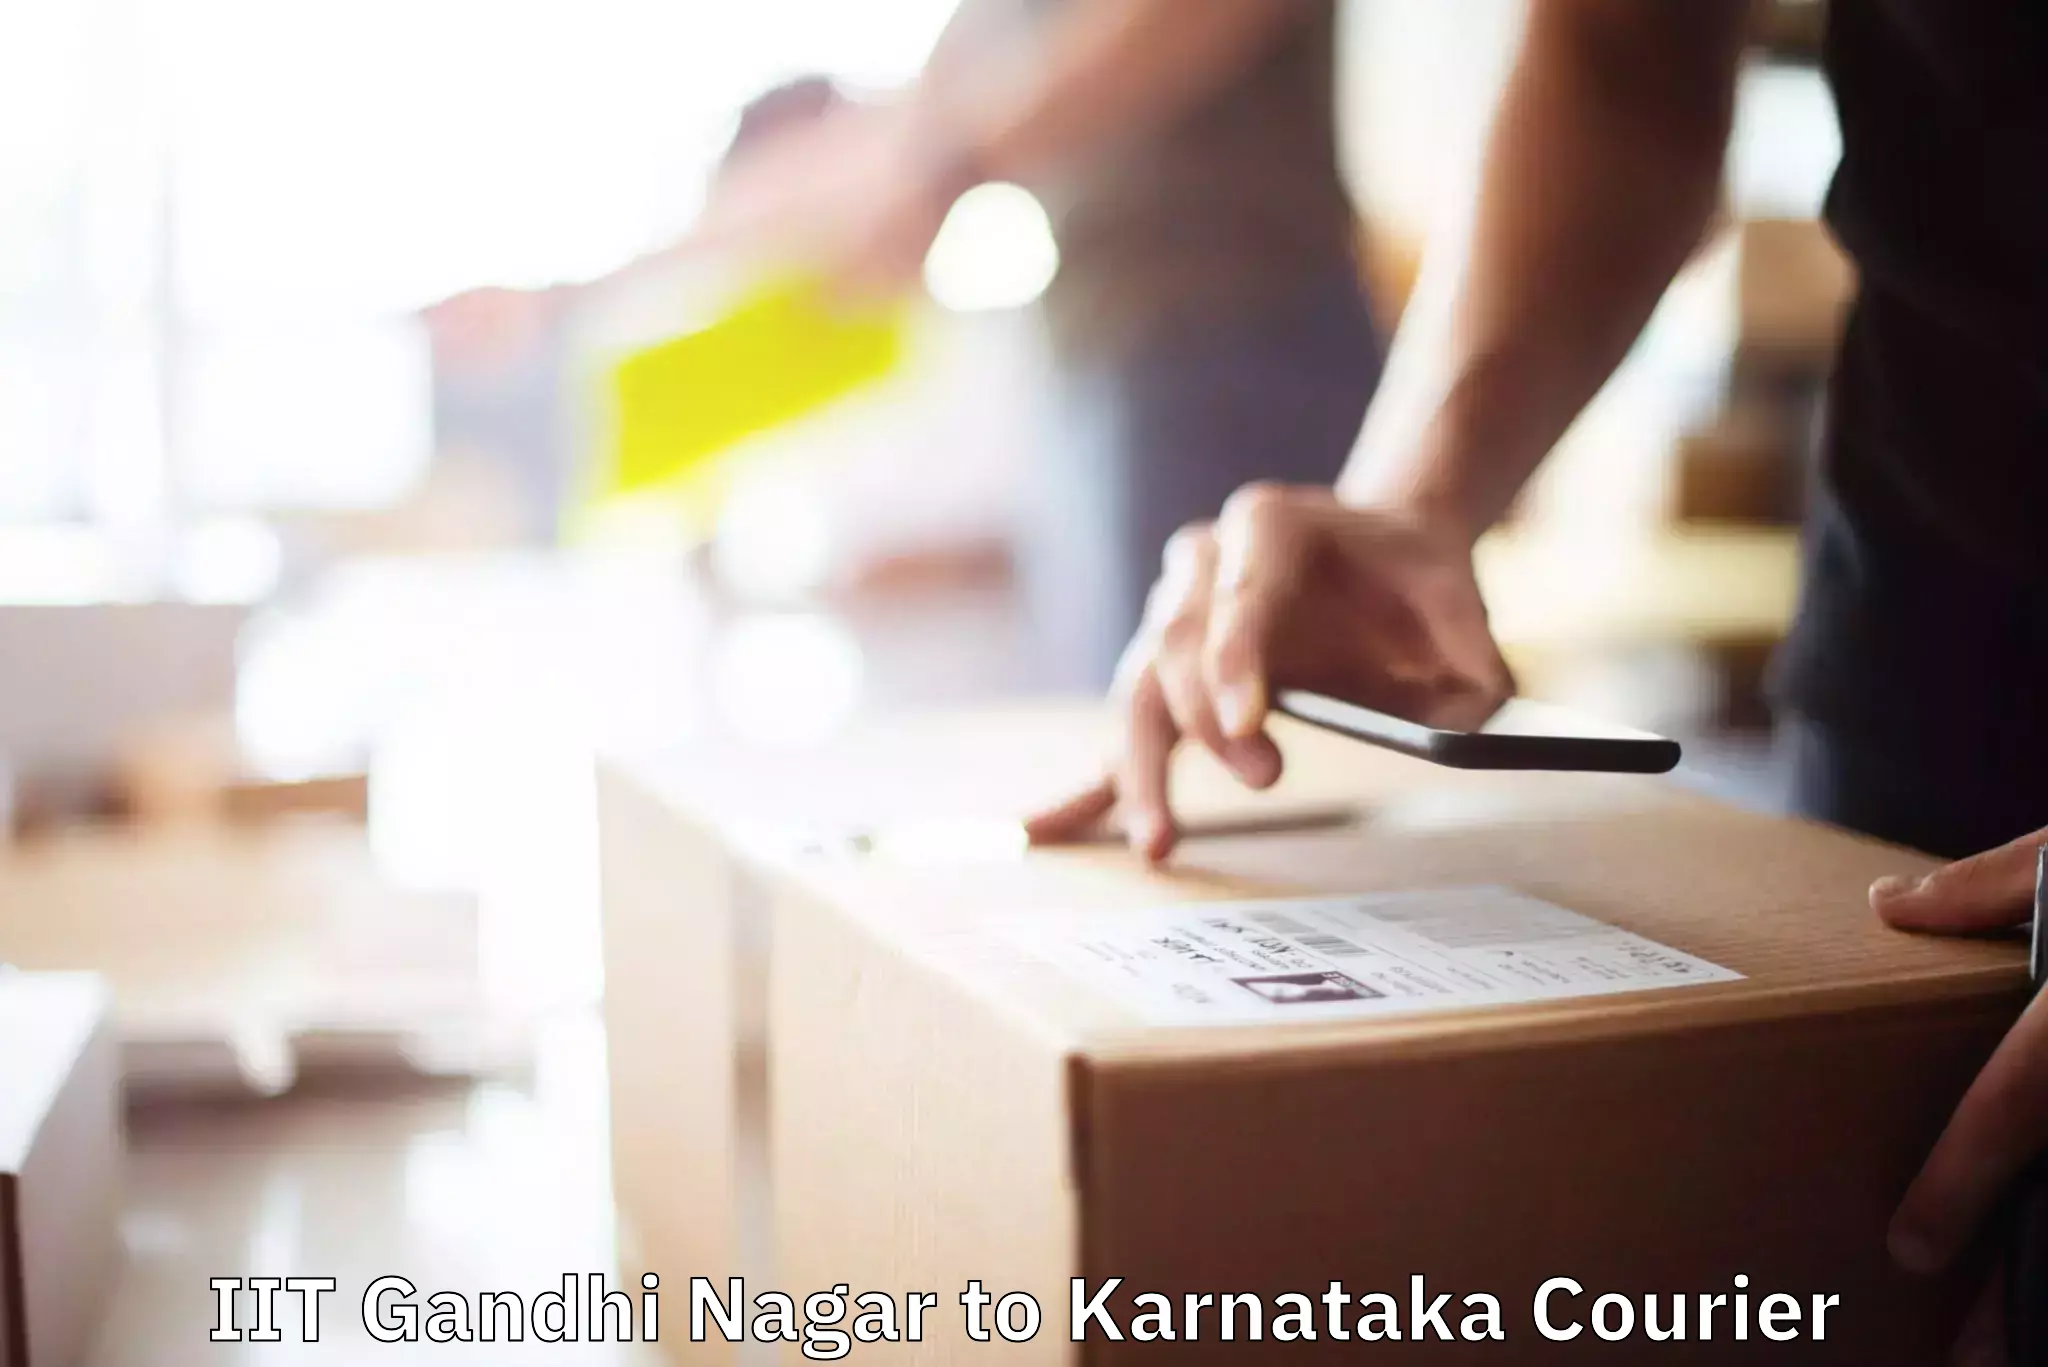 Furniture moving experts IIT Gandhi Nagar to Karnataka